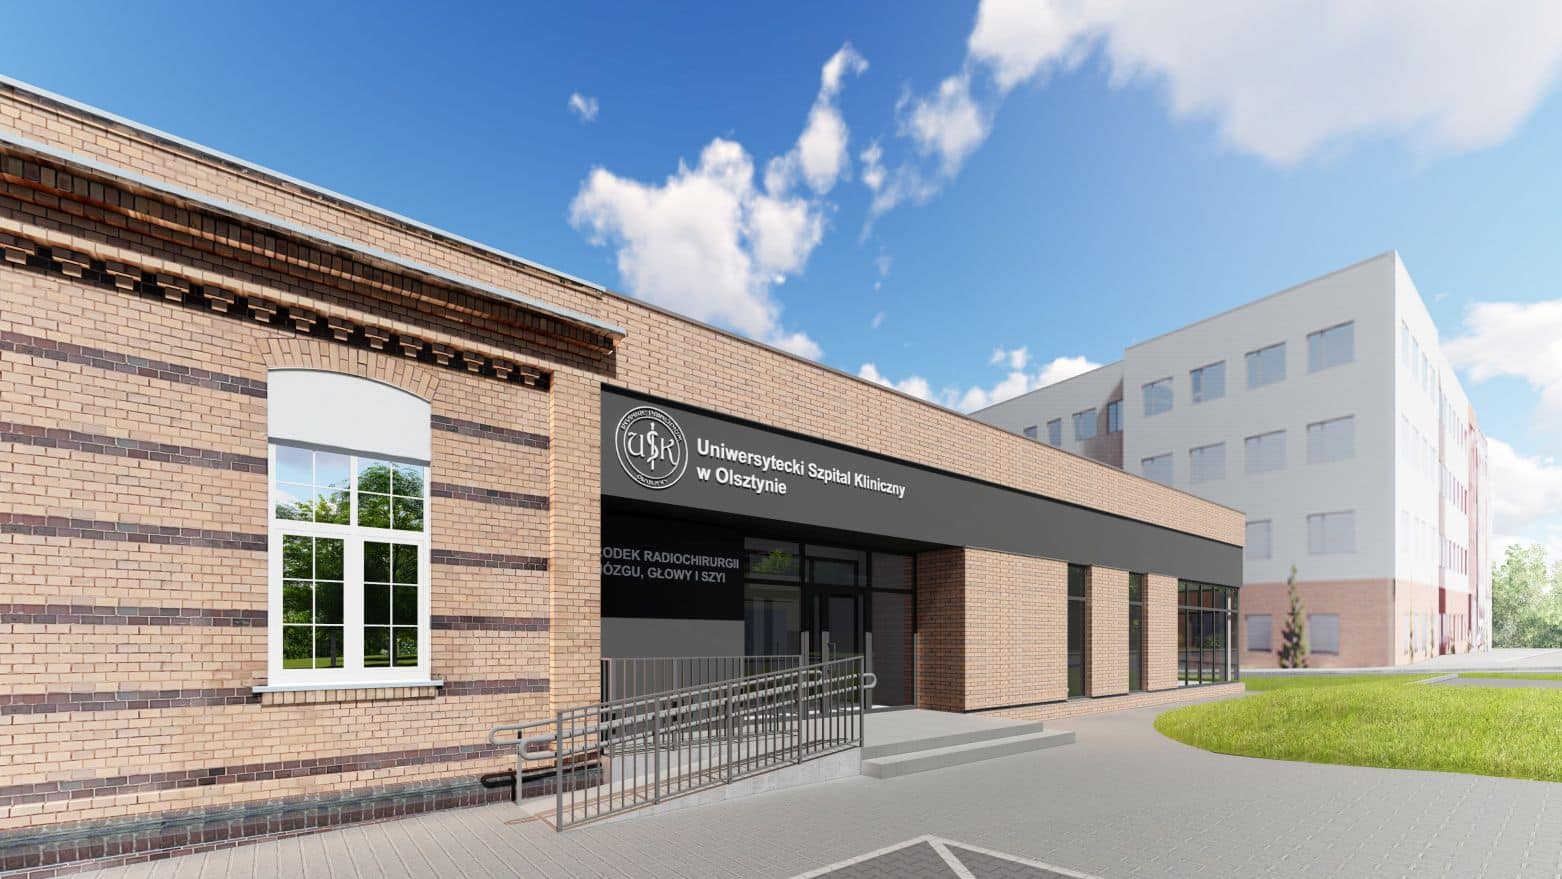 Rusza budowa ośrodka radiochirurgii przy szpitalu uniwersyteckim zdrowie Olsztyn, Wiadomości